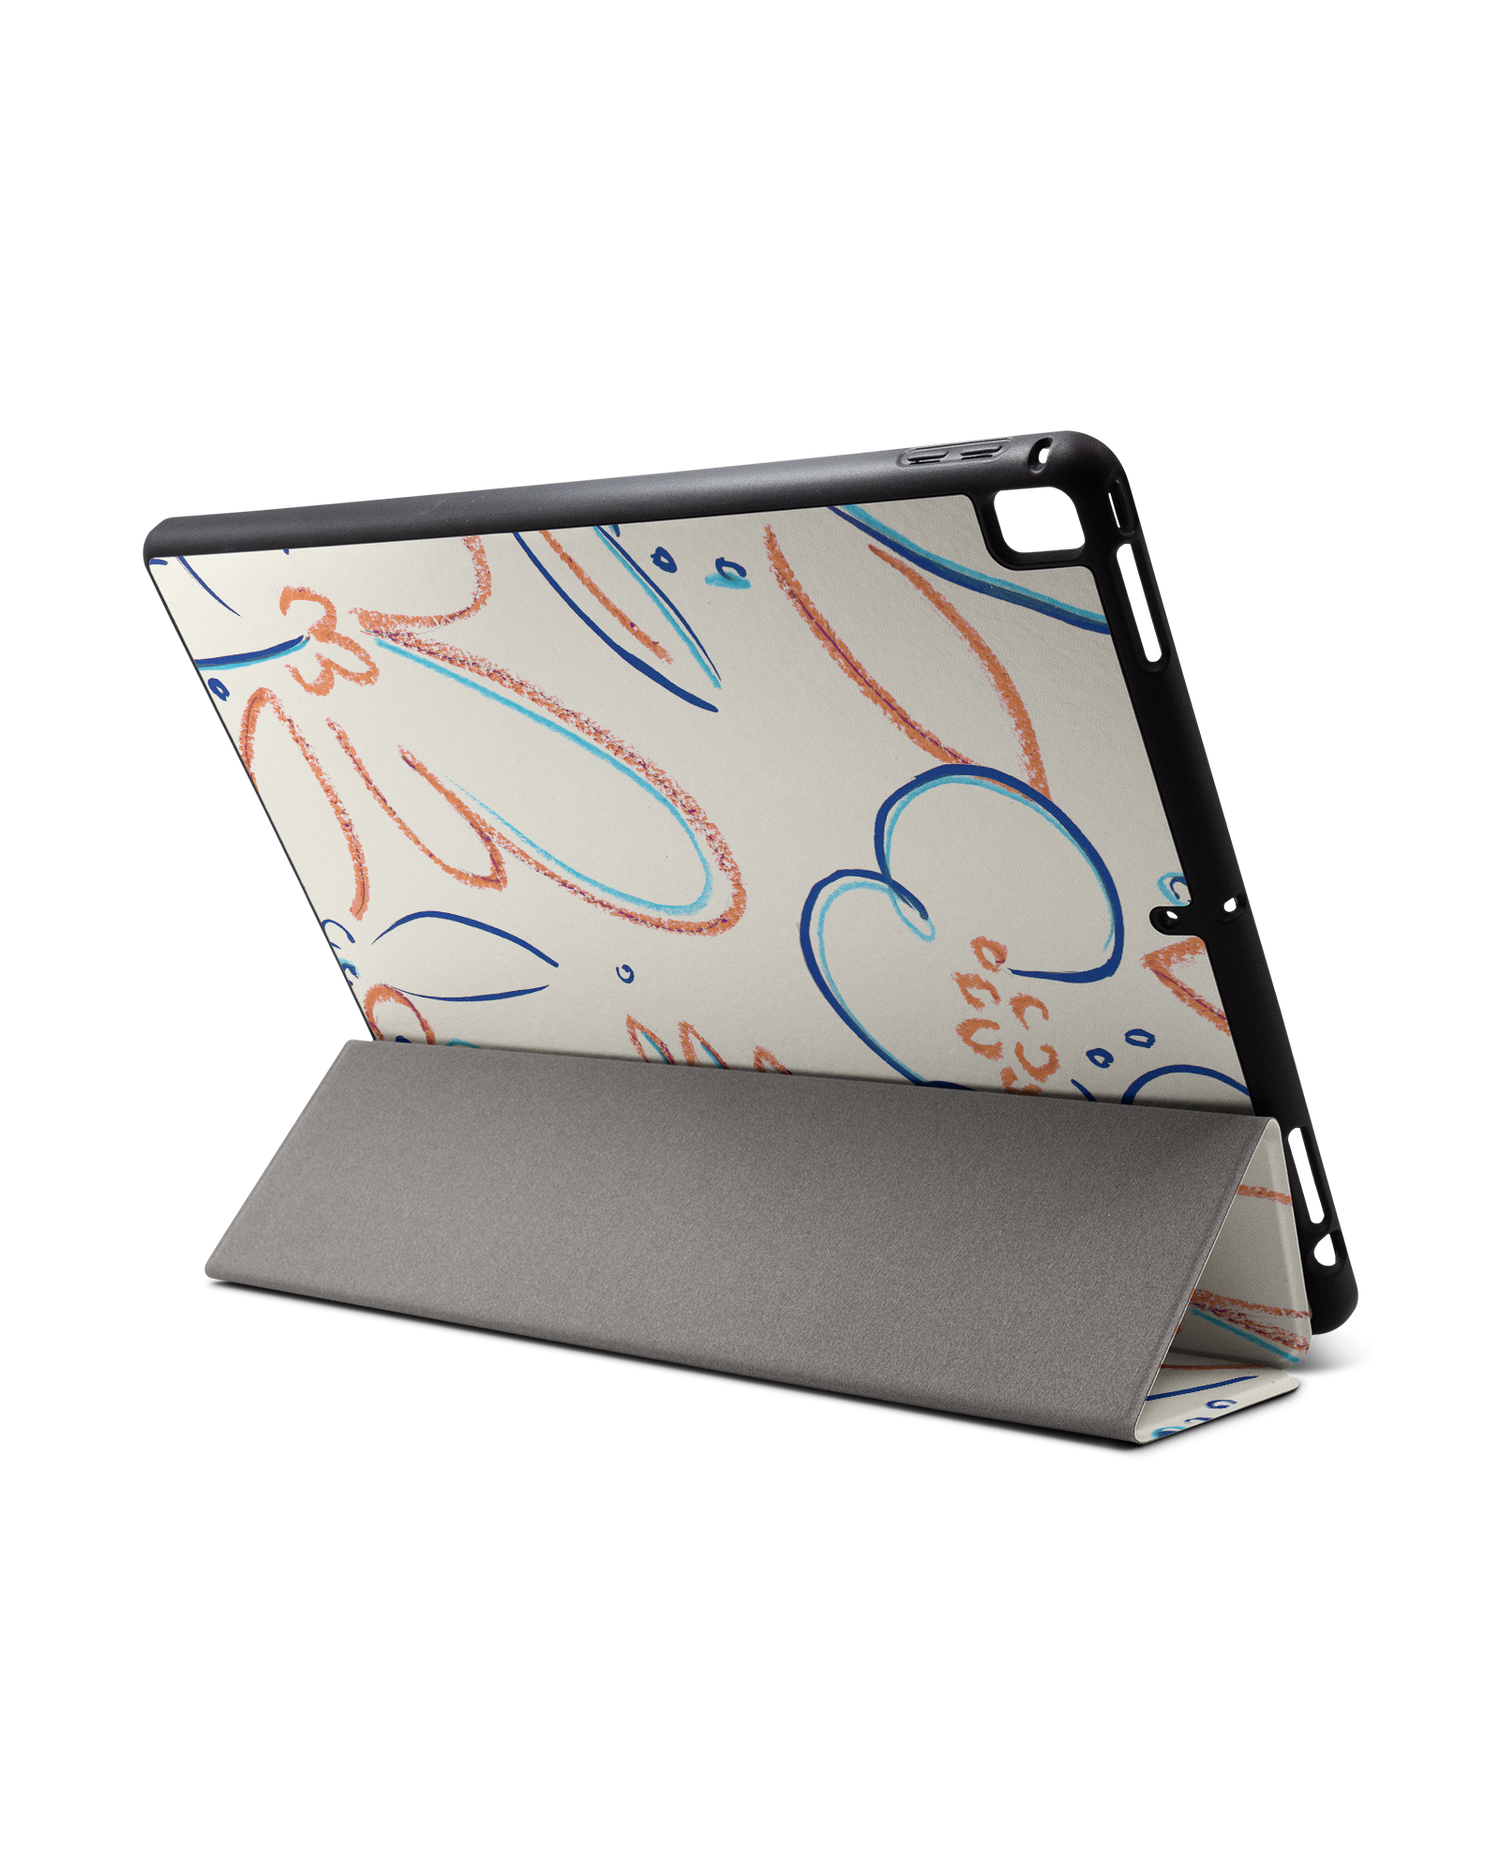 Bloom Doodles iPad Hülle mit Stifthalter für Apple iPad Pro 2 12.9'' (2017): Aufgestellt im Querformat von hinten